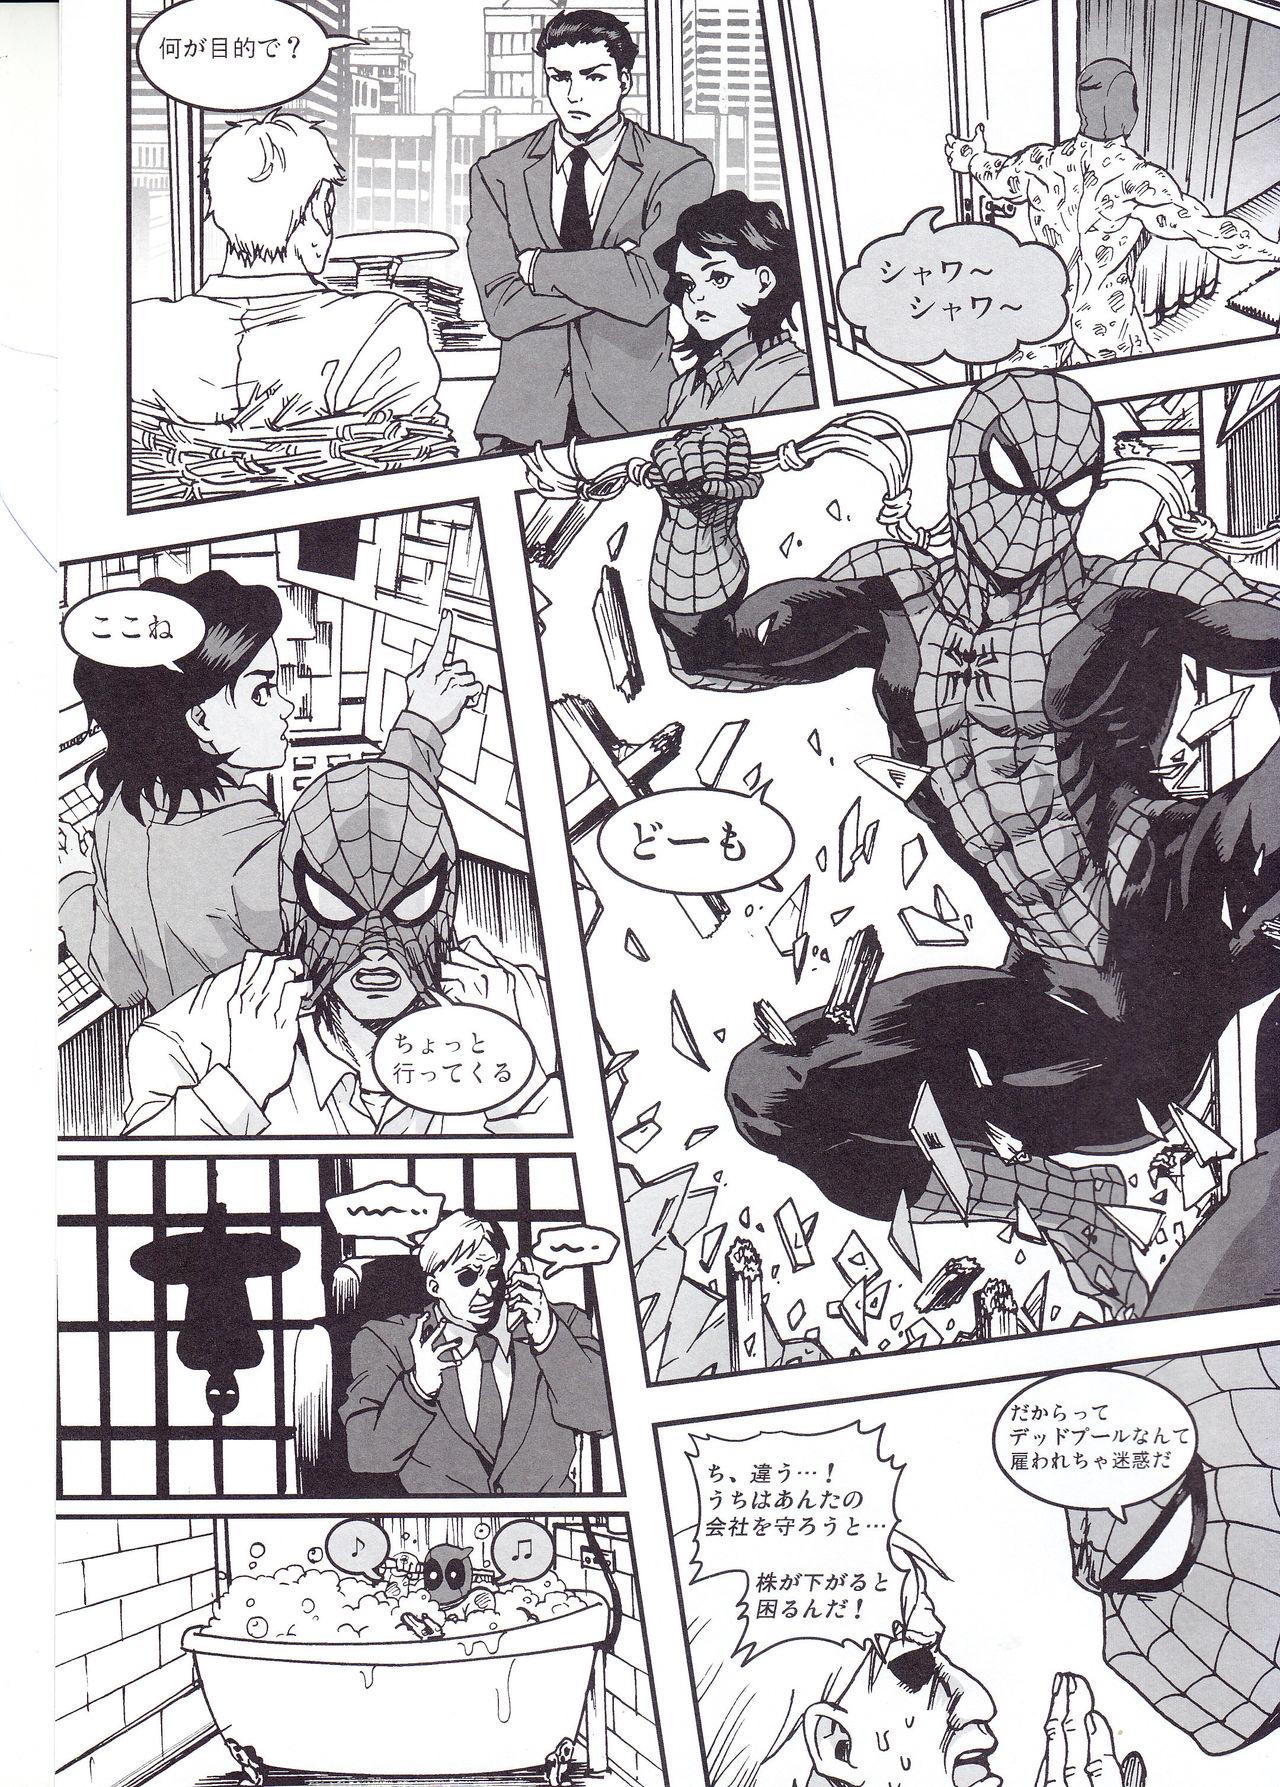 Naughty THREE DAYS 2-3 - Spider-man Deadpool Nurumassage - Page 3